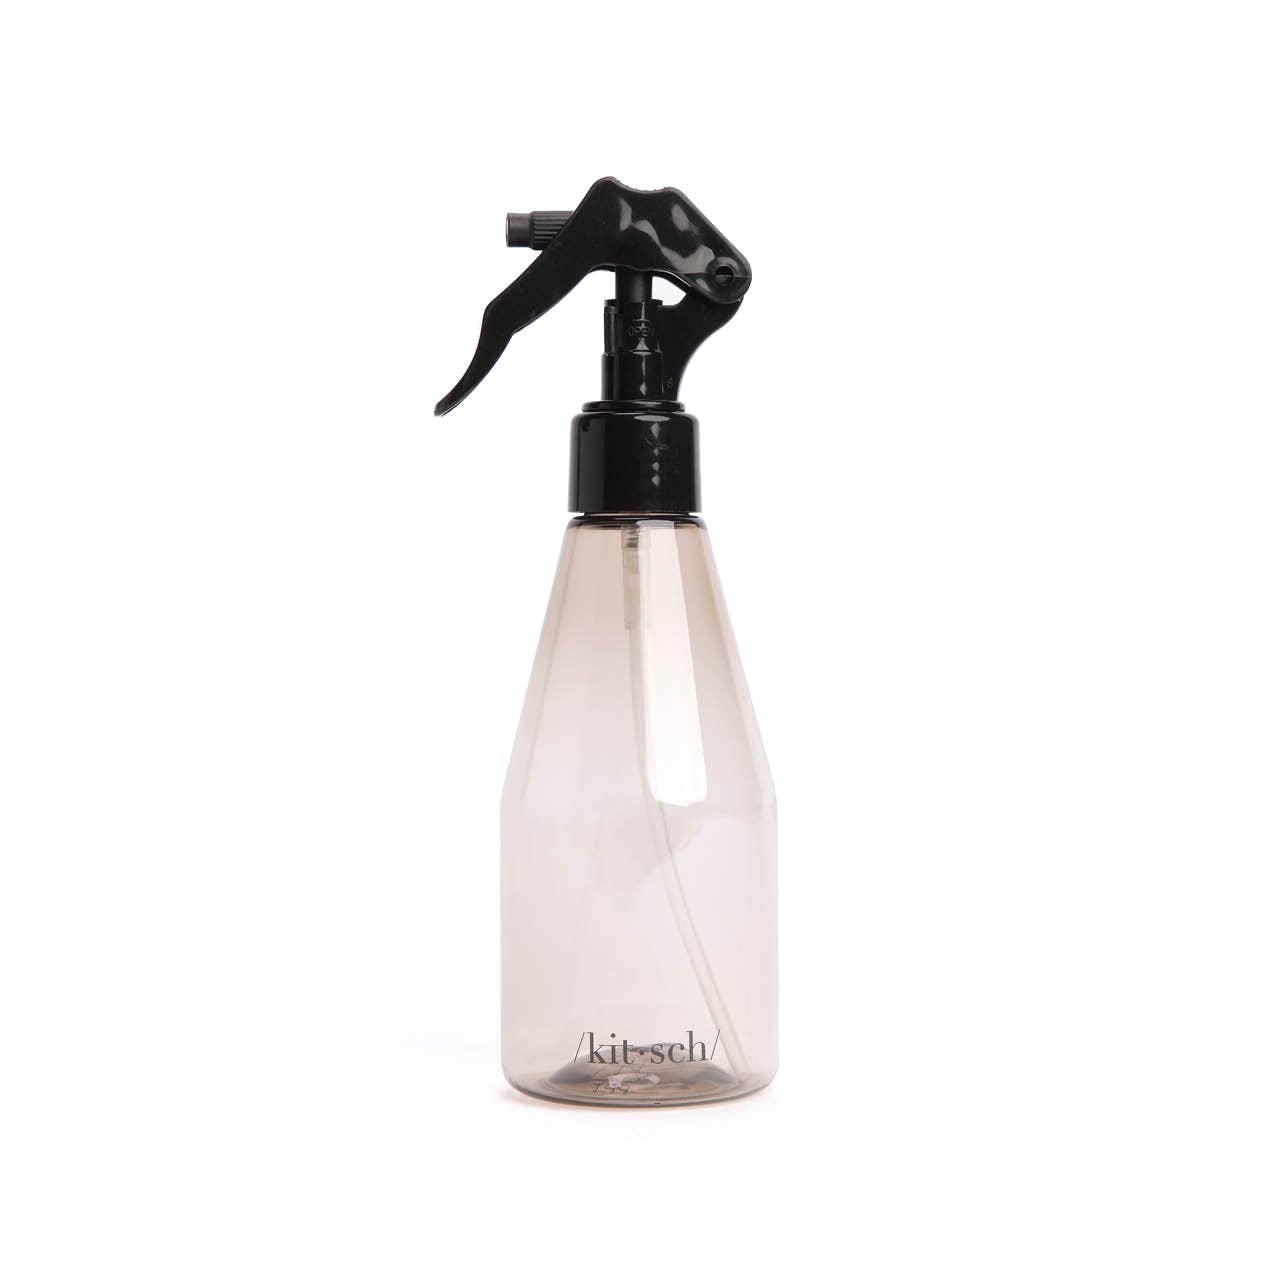 KITSCH - Eco-Friendly Spray Bottle - Black